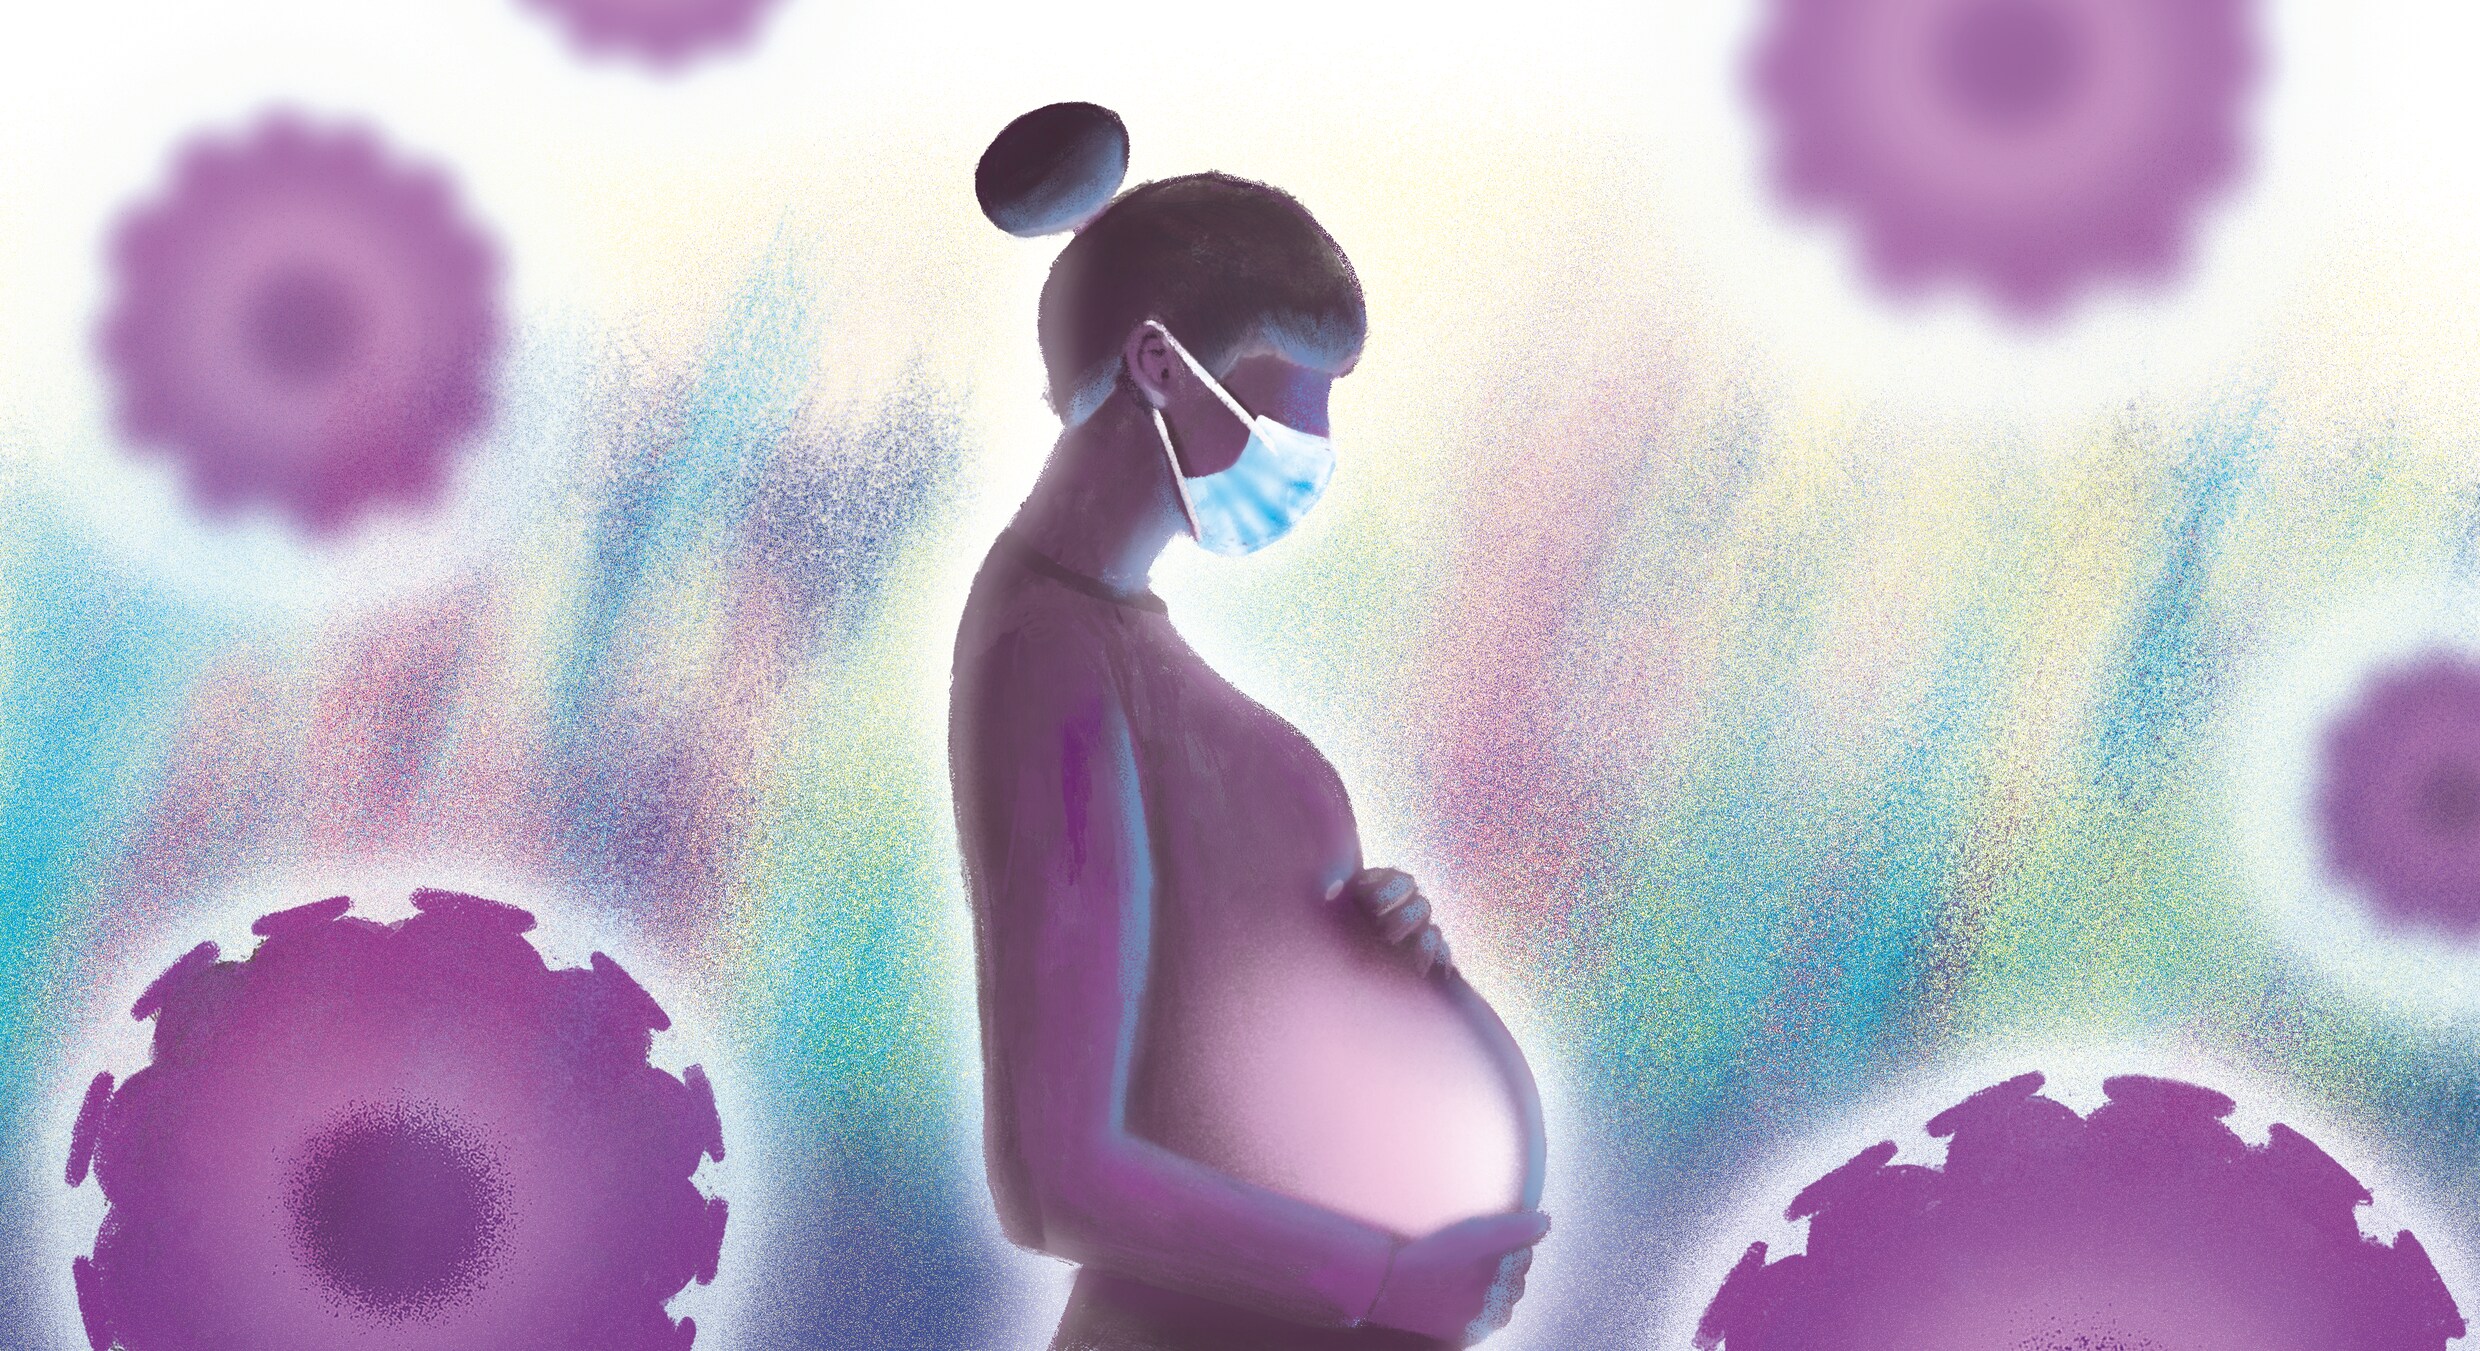 Steeds meer niet-gevaccineerde zwangere vrouwen met covid op intensieve zorg. Met vaak grote gevolgen